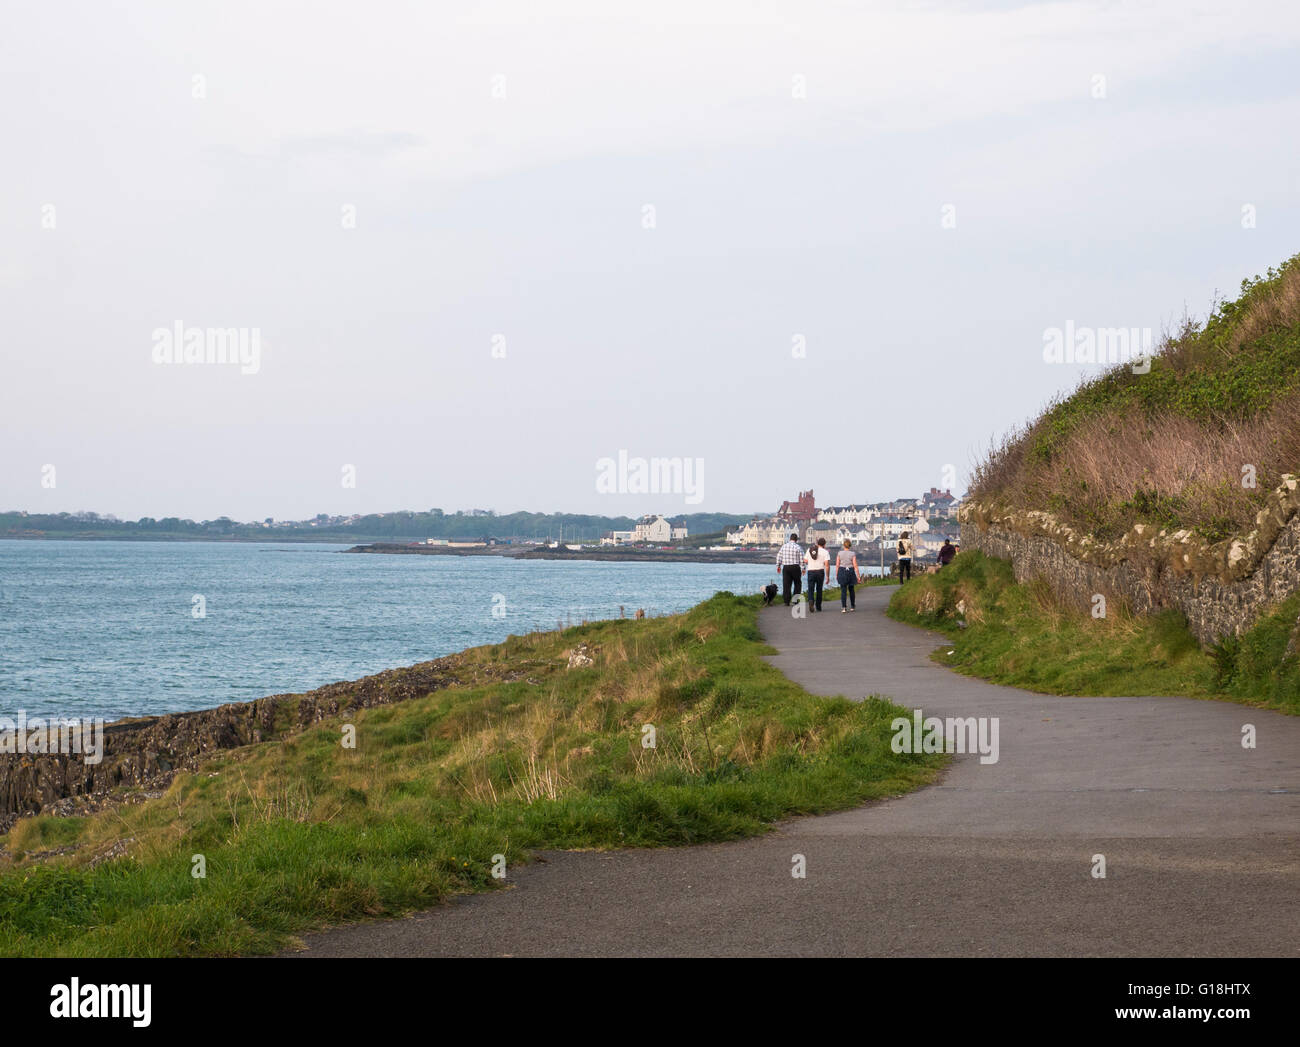 Bangor, Irlanda del Nord, 10 maggio 2016. Regno Unito: meteo su un giorno quando la temperatura raggiunge i 21C walkers sul sentiero costiero approccio alla città come al tramonto si avvicina. Credito: J Orr/Alamy Live News Foto Stock